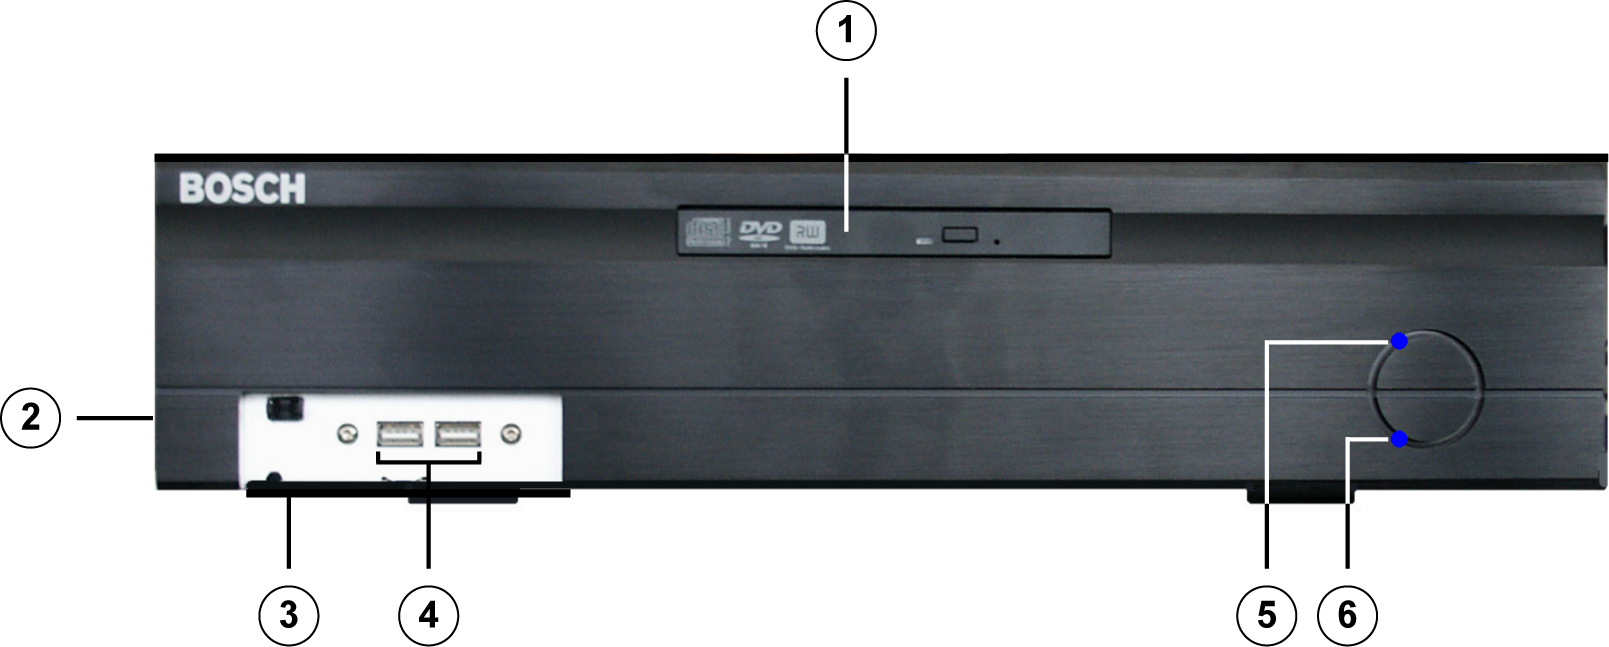 DiBos/DiBos Micro Enhetens tilkoblingspunkter no 25 3.2 DiBos Micro 3.2.1 DiBos Micro sett forfra 1 DVD-RW 4 2 x USB 2.